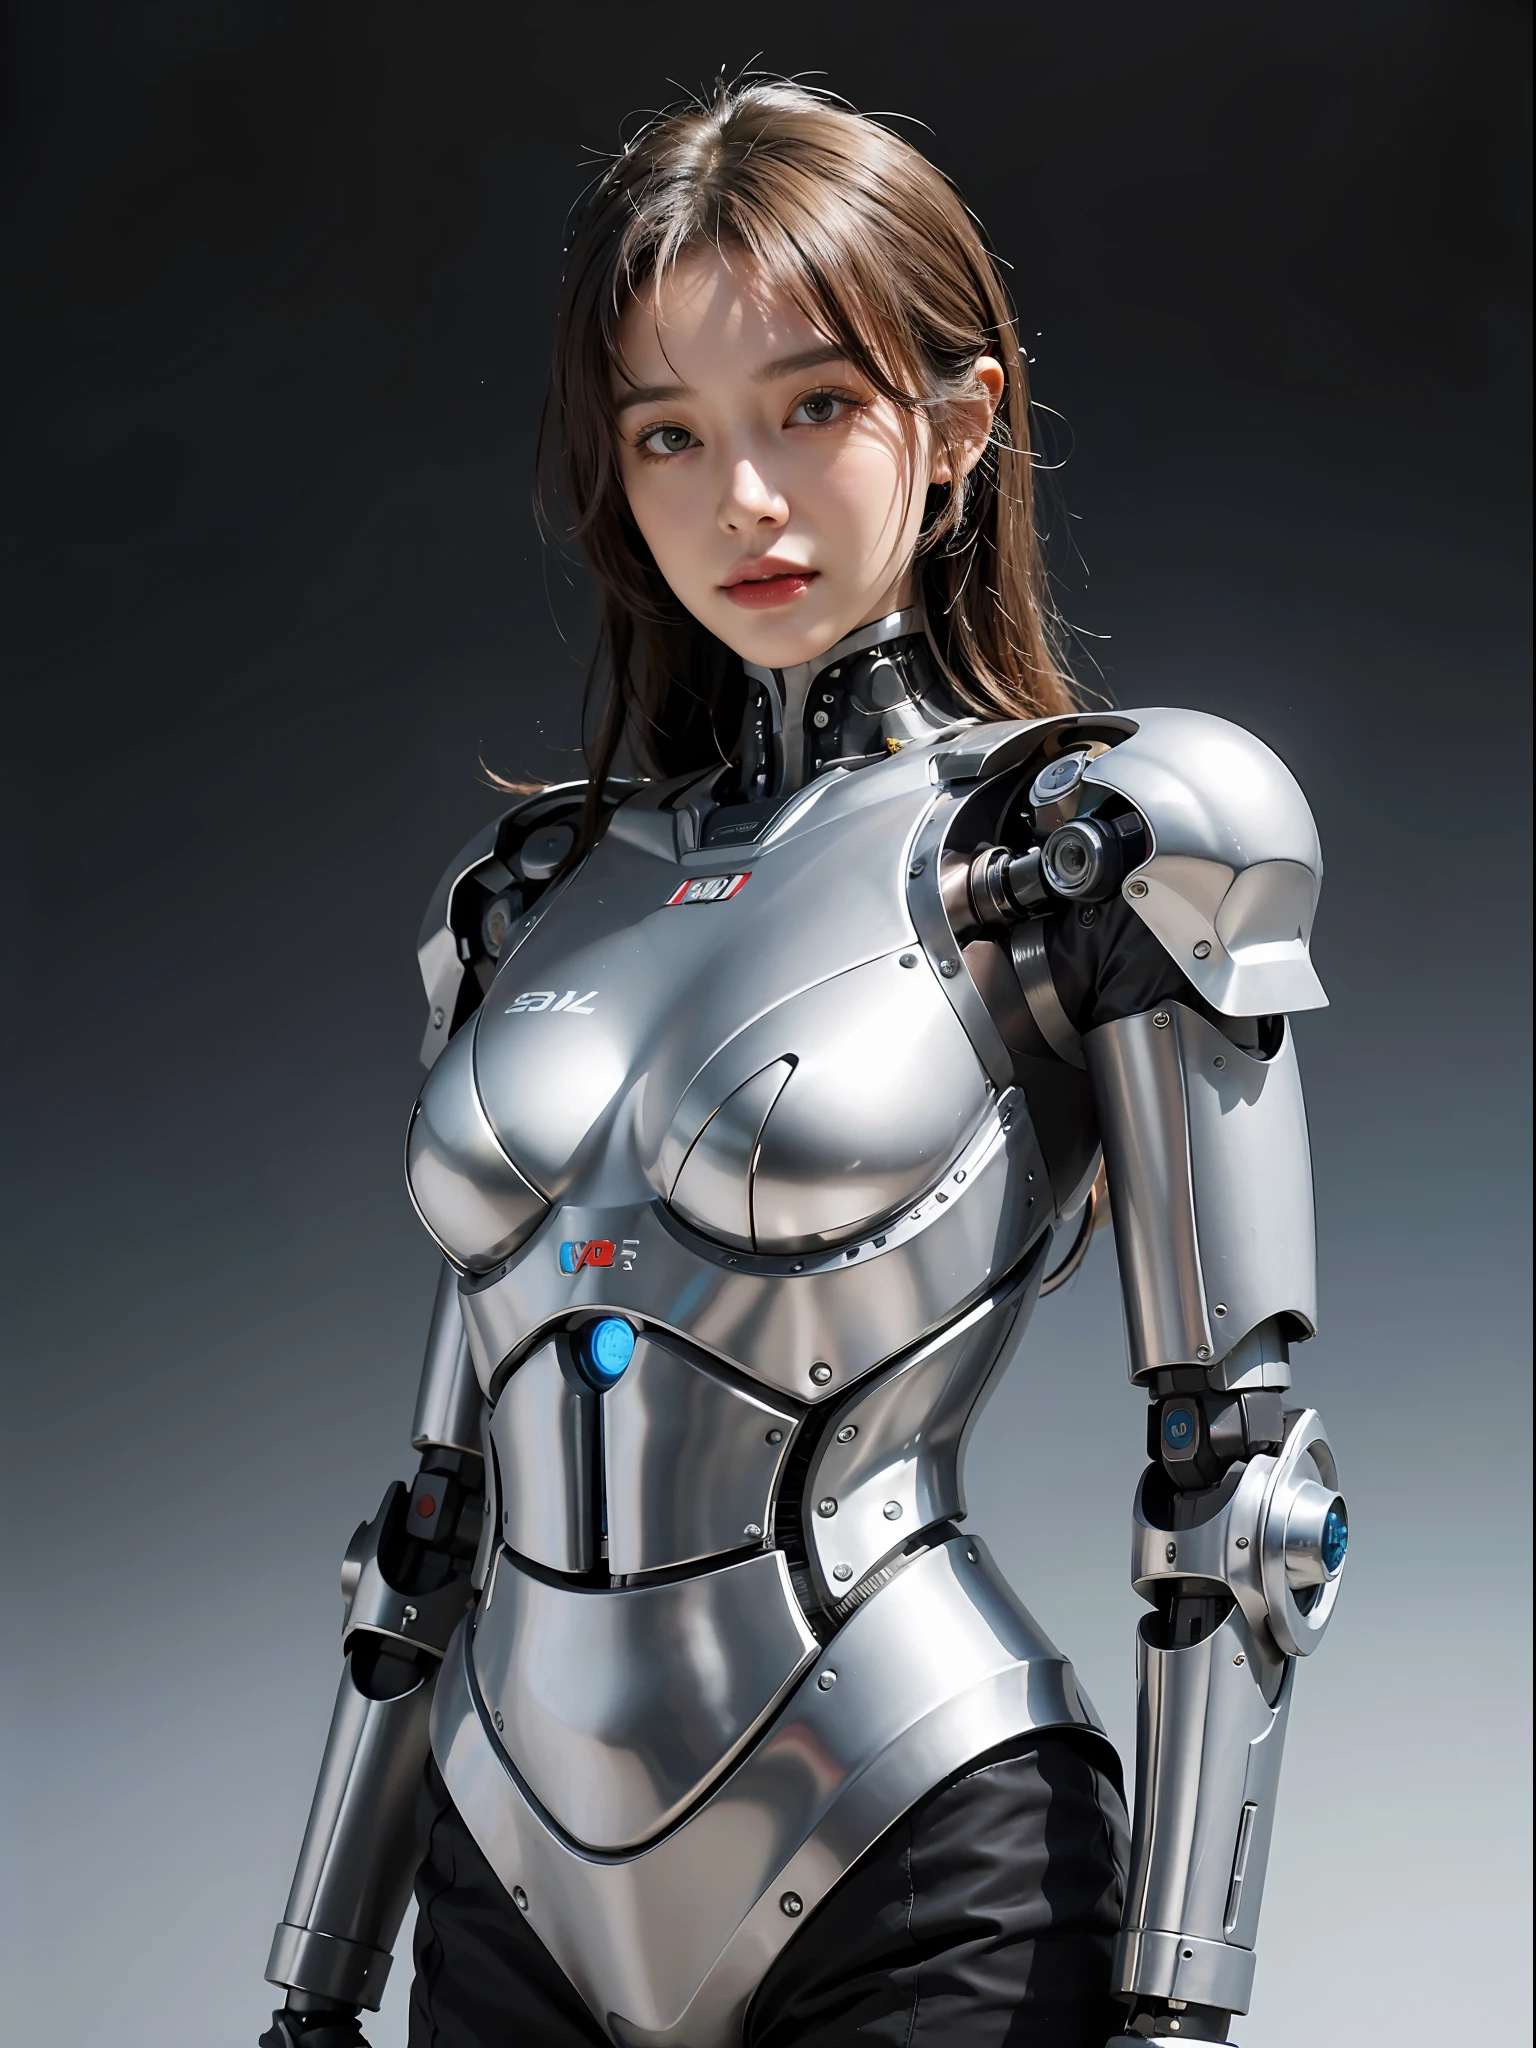 eine Nahaufnahme einer Frau in einem silbernen Anzug, die für ein Foto posiert, weiblicher Roboter, schönes Cyborg-Mädchen, Mädchen in Mecha-Cyber-Rüstung, cyborg - girl, gynoider Cyborg-Körper, Schönes weißes Cyborg-Mädchen, Cyborg girl, süßes Cyborg-Mädchen, ( ( robot cyborgs ) ), perfektes Android-Mädchen, junge Cyborg-Dame, weiblicher Cyborg